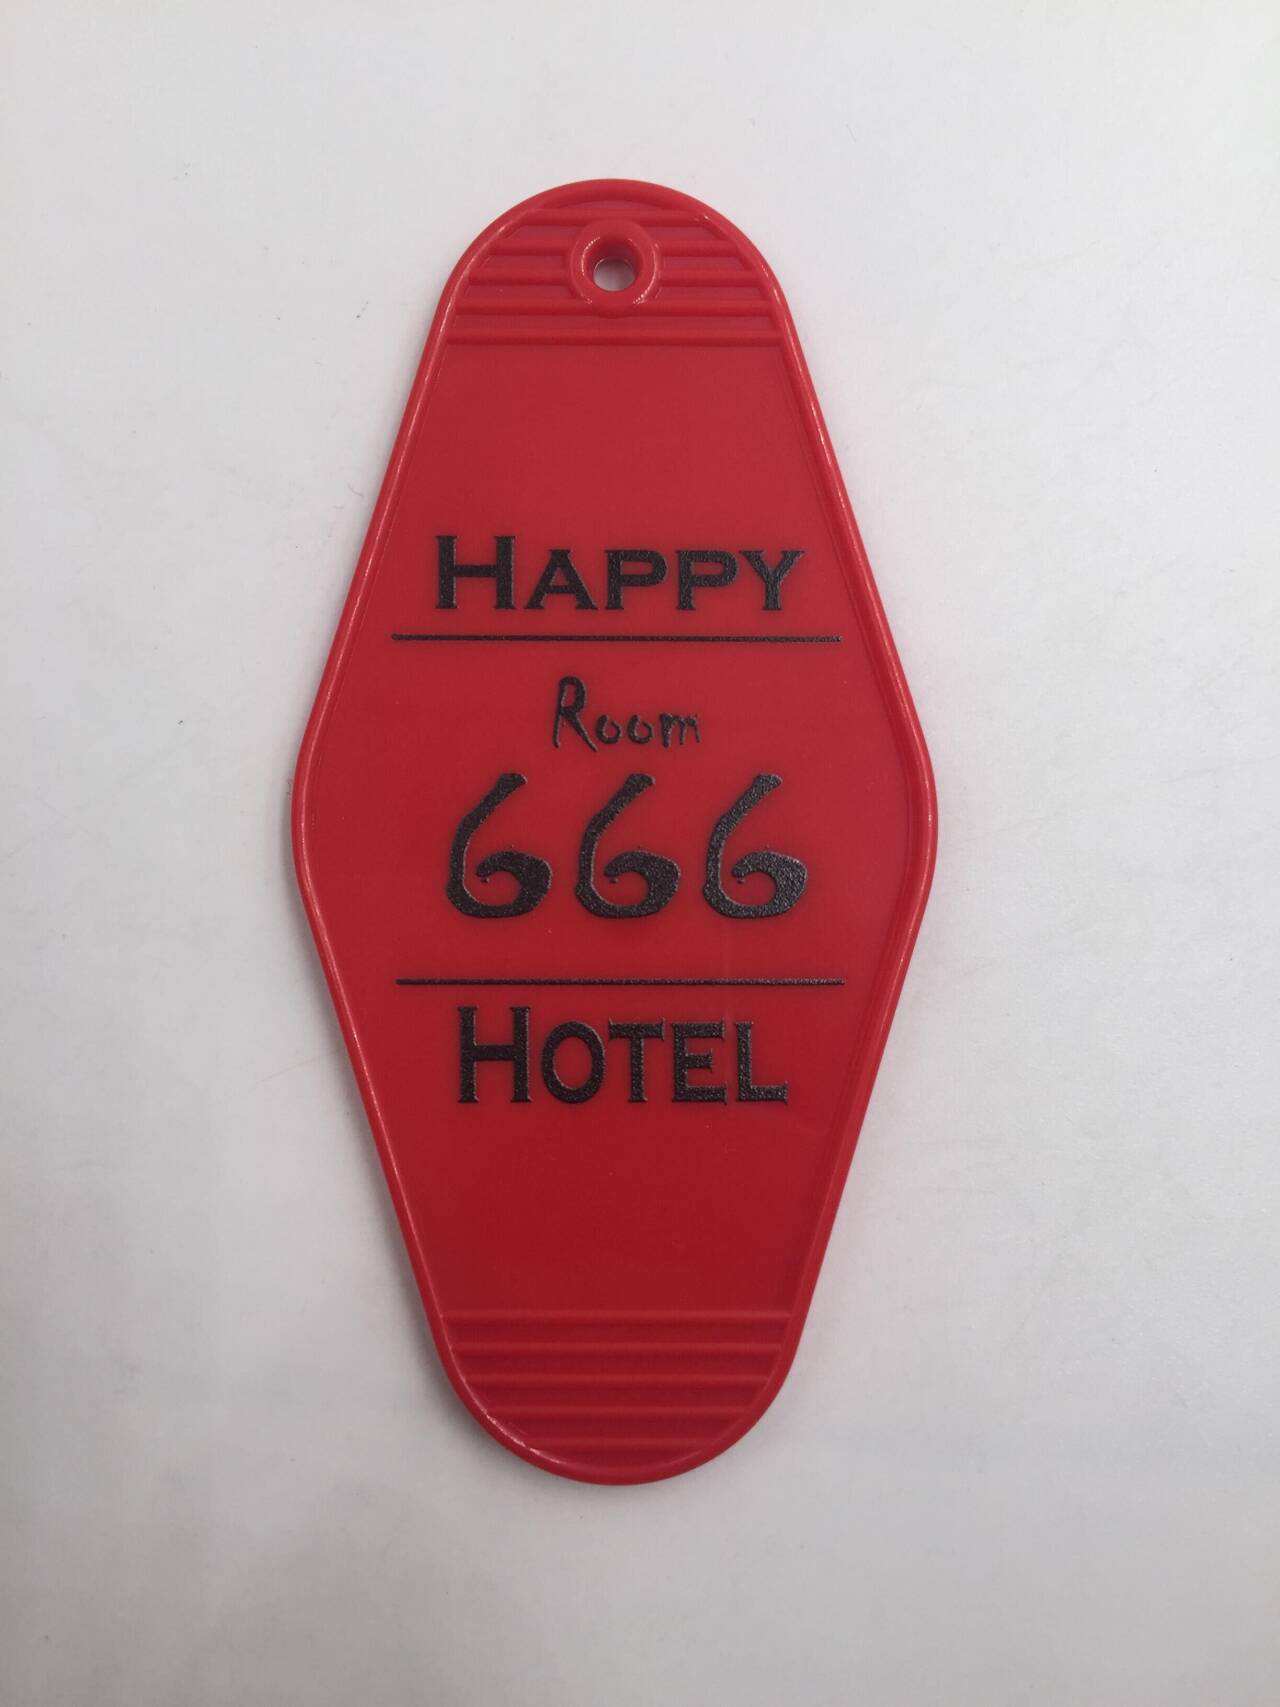 Happy Hotel - Room 666 Fan Keychain